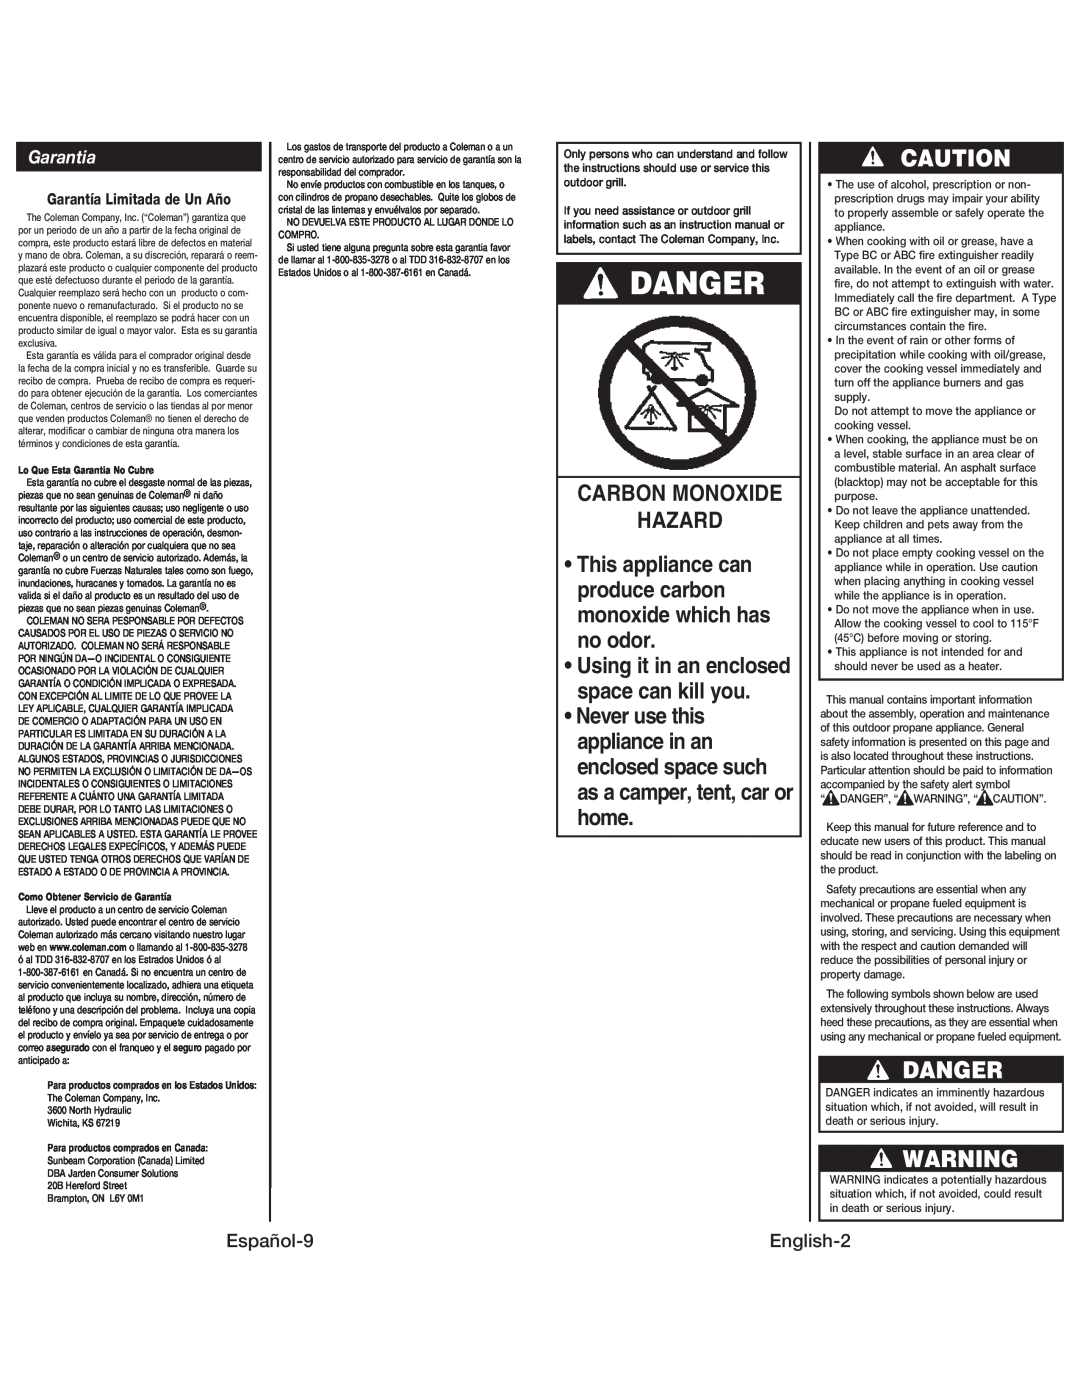 Coleman 9939 instruction manual Danger, Carbon Monoxide Hazard 